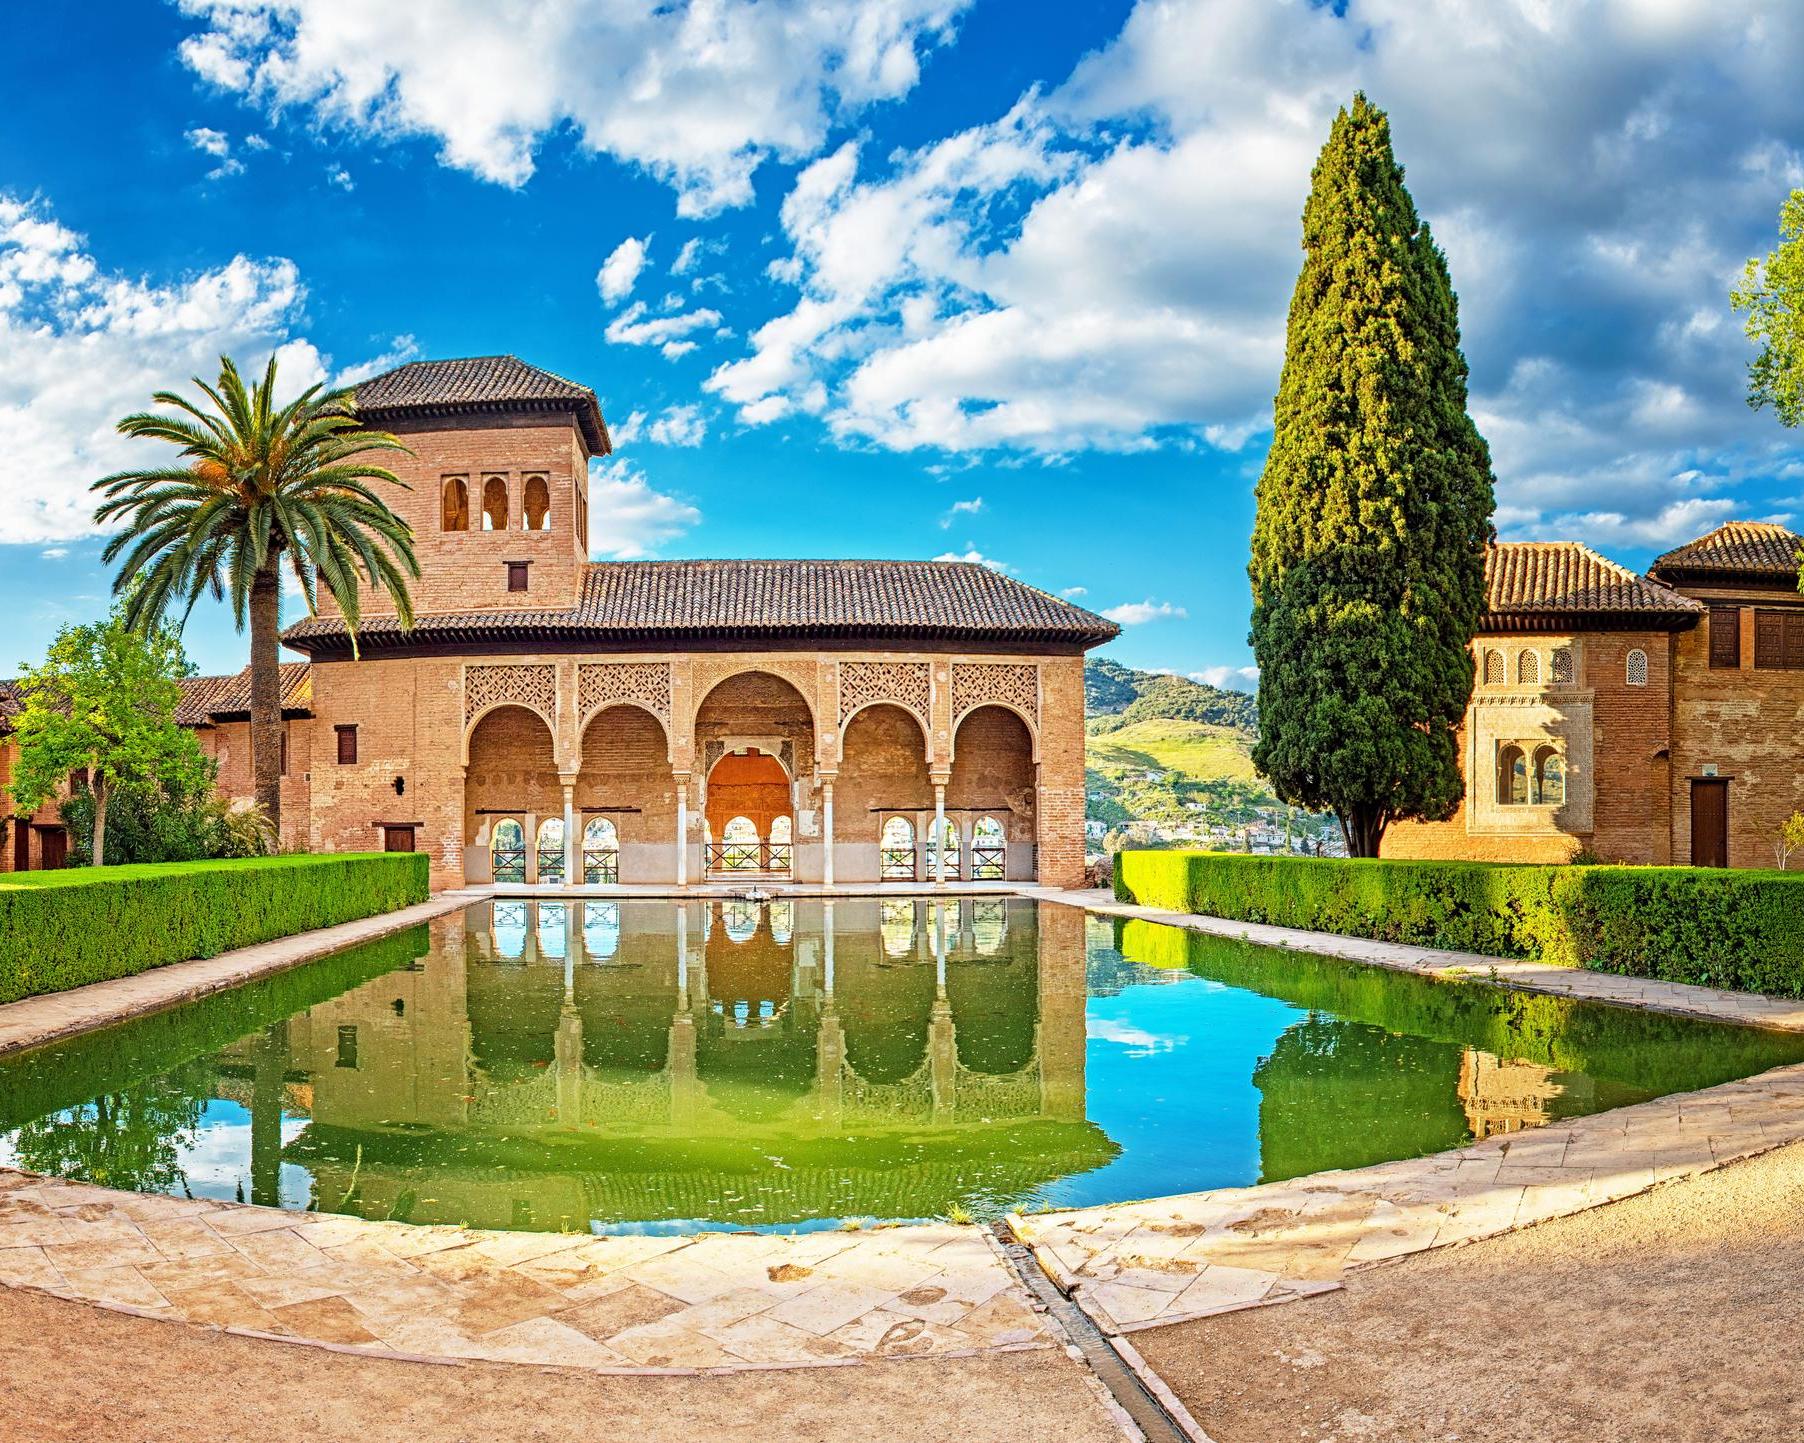 Viaje a Granada con visita al Alhambra